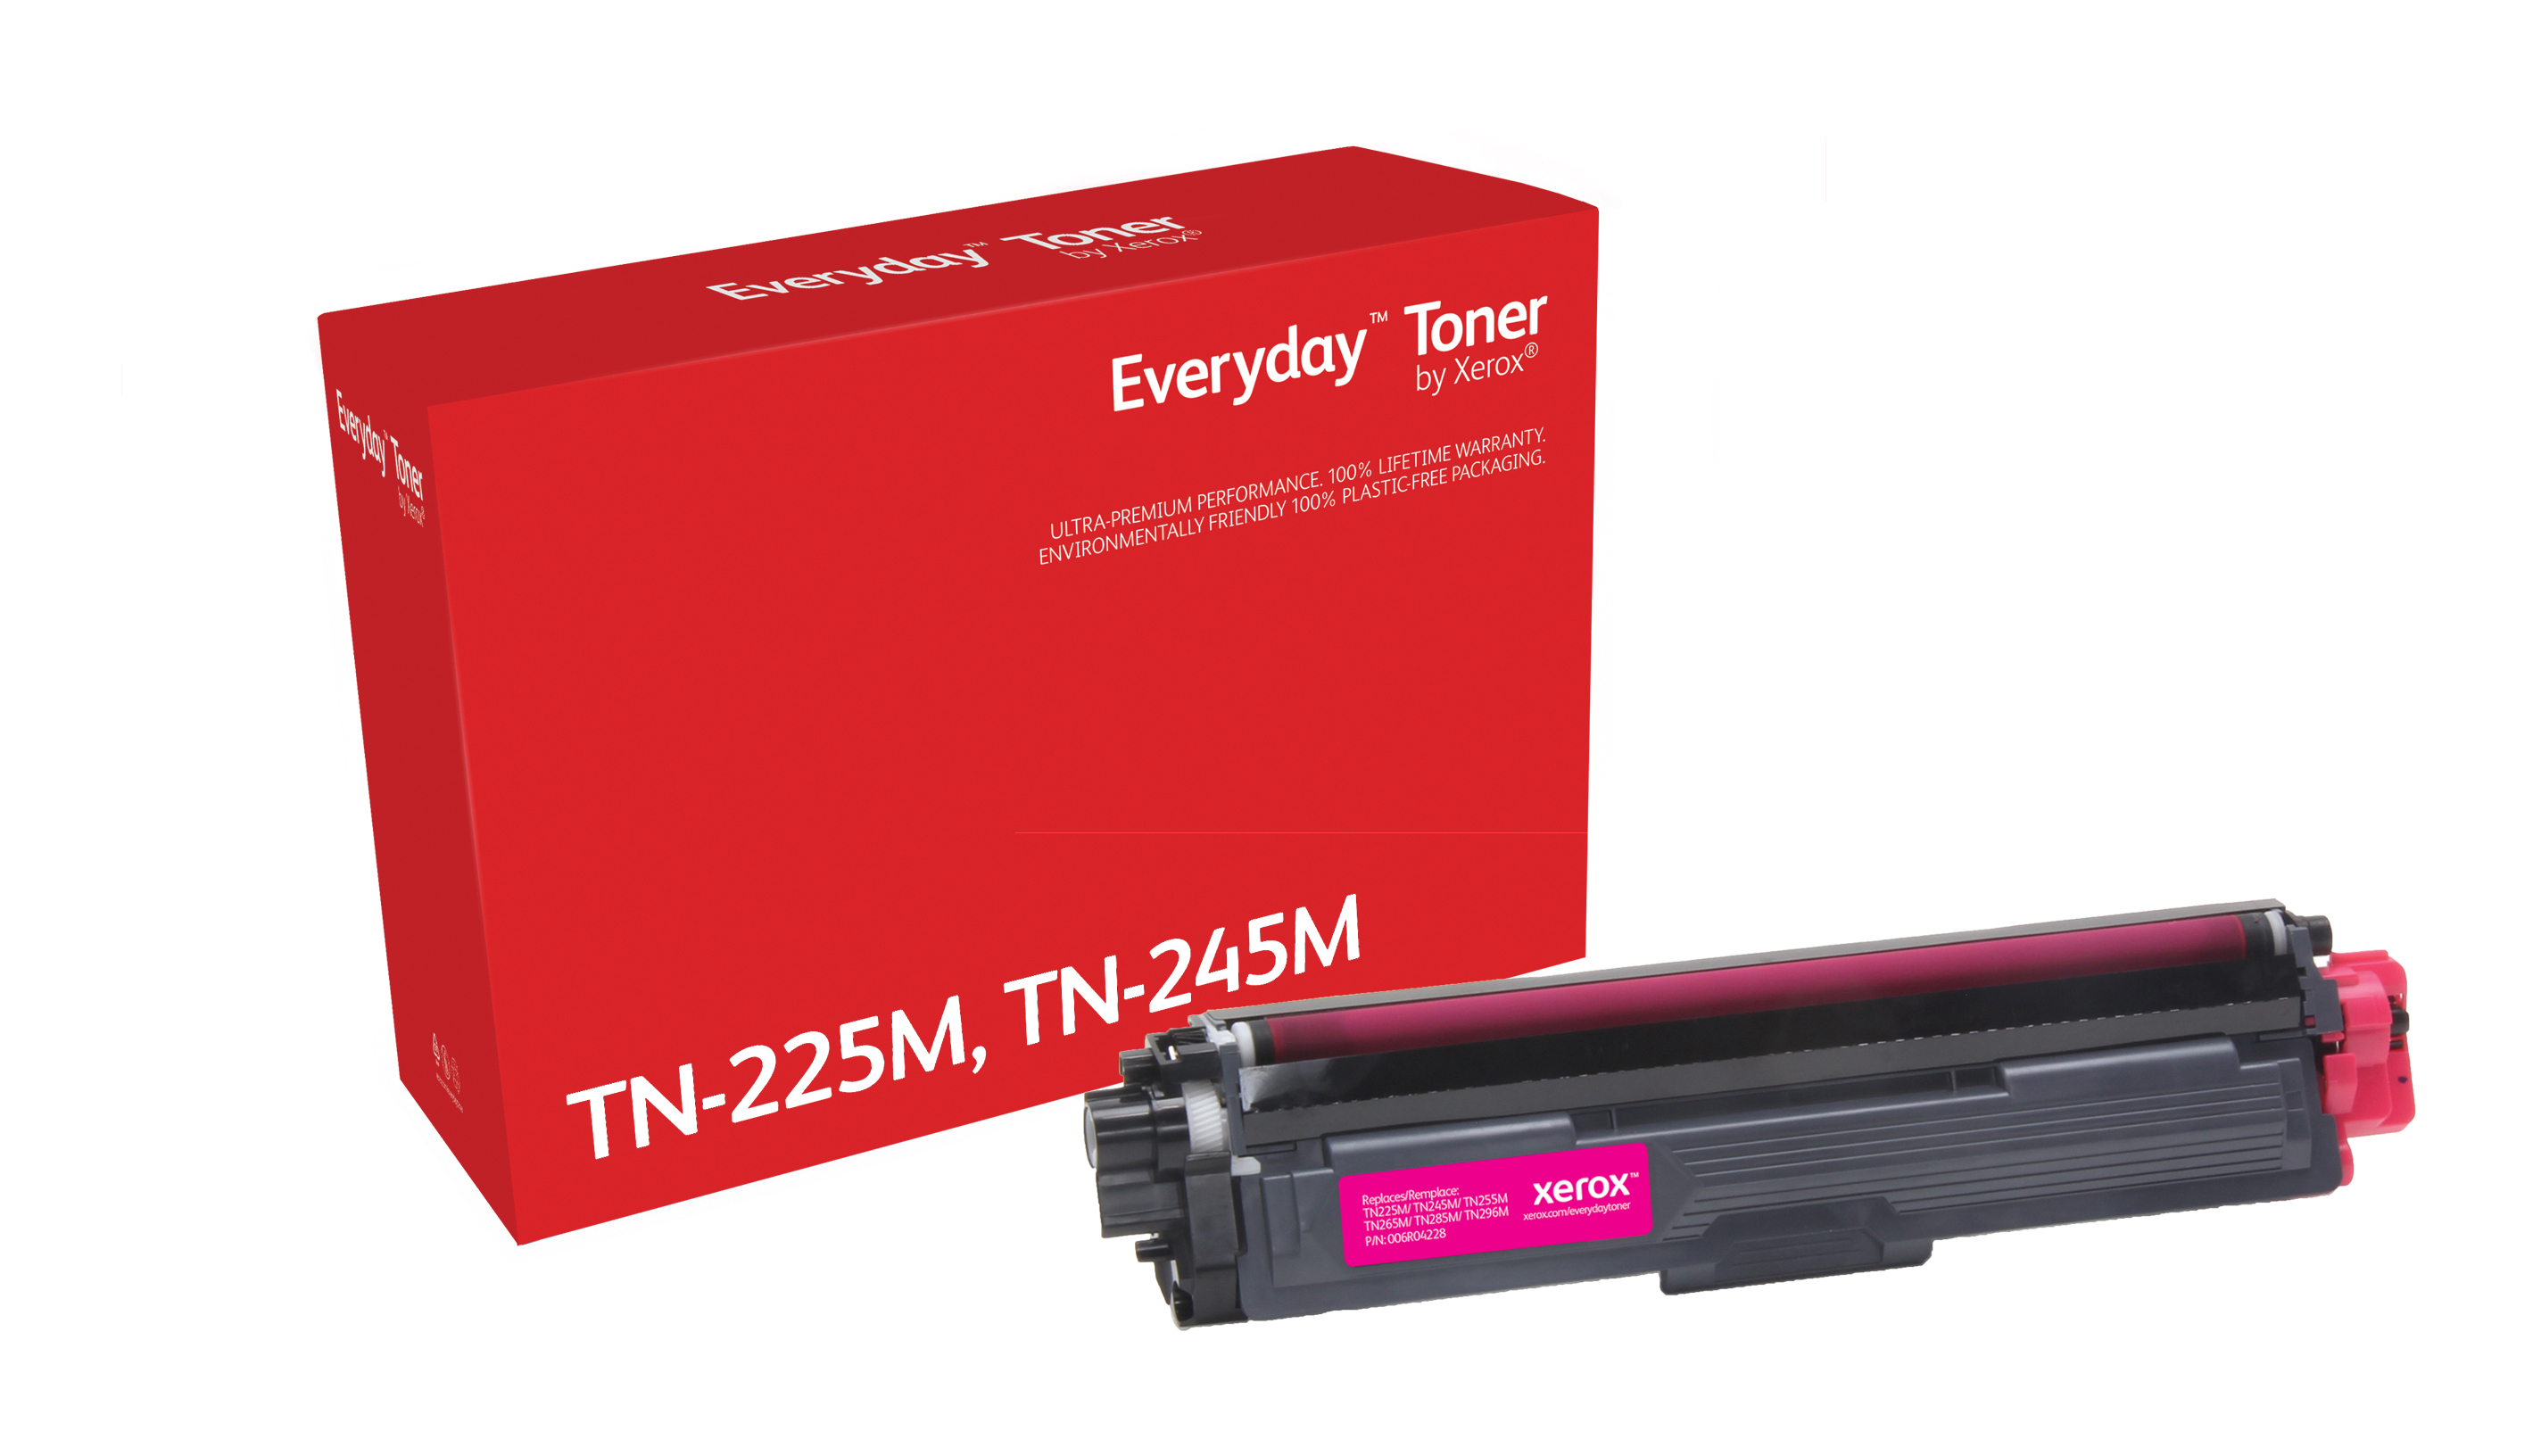 Xerox Everyday Magenta Toner compatibel met Brother TN-225M/ TN-245M, High capacity